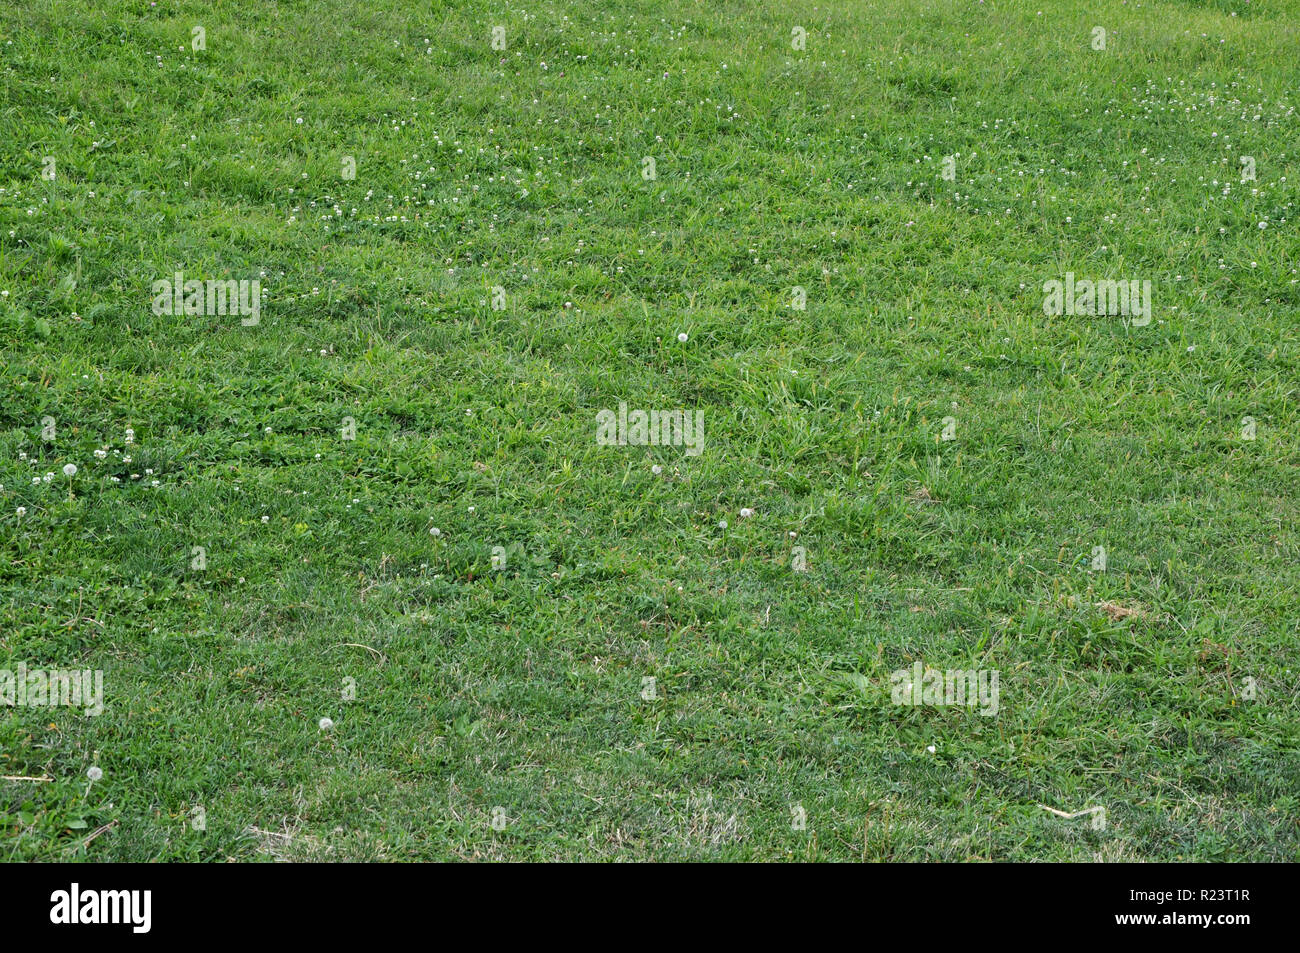 Arrière-plan horizontal de l'herbe verte avec des fleurs blanches et des graines de pissenlit. Banque D'Images